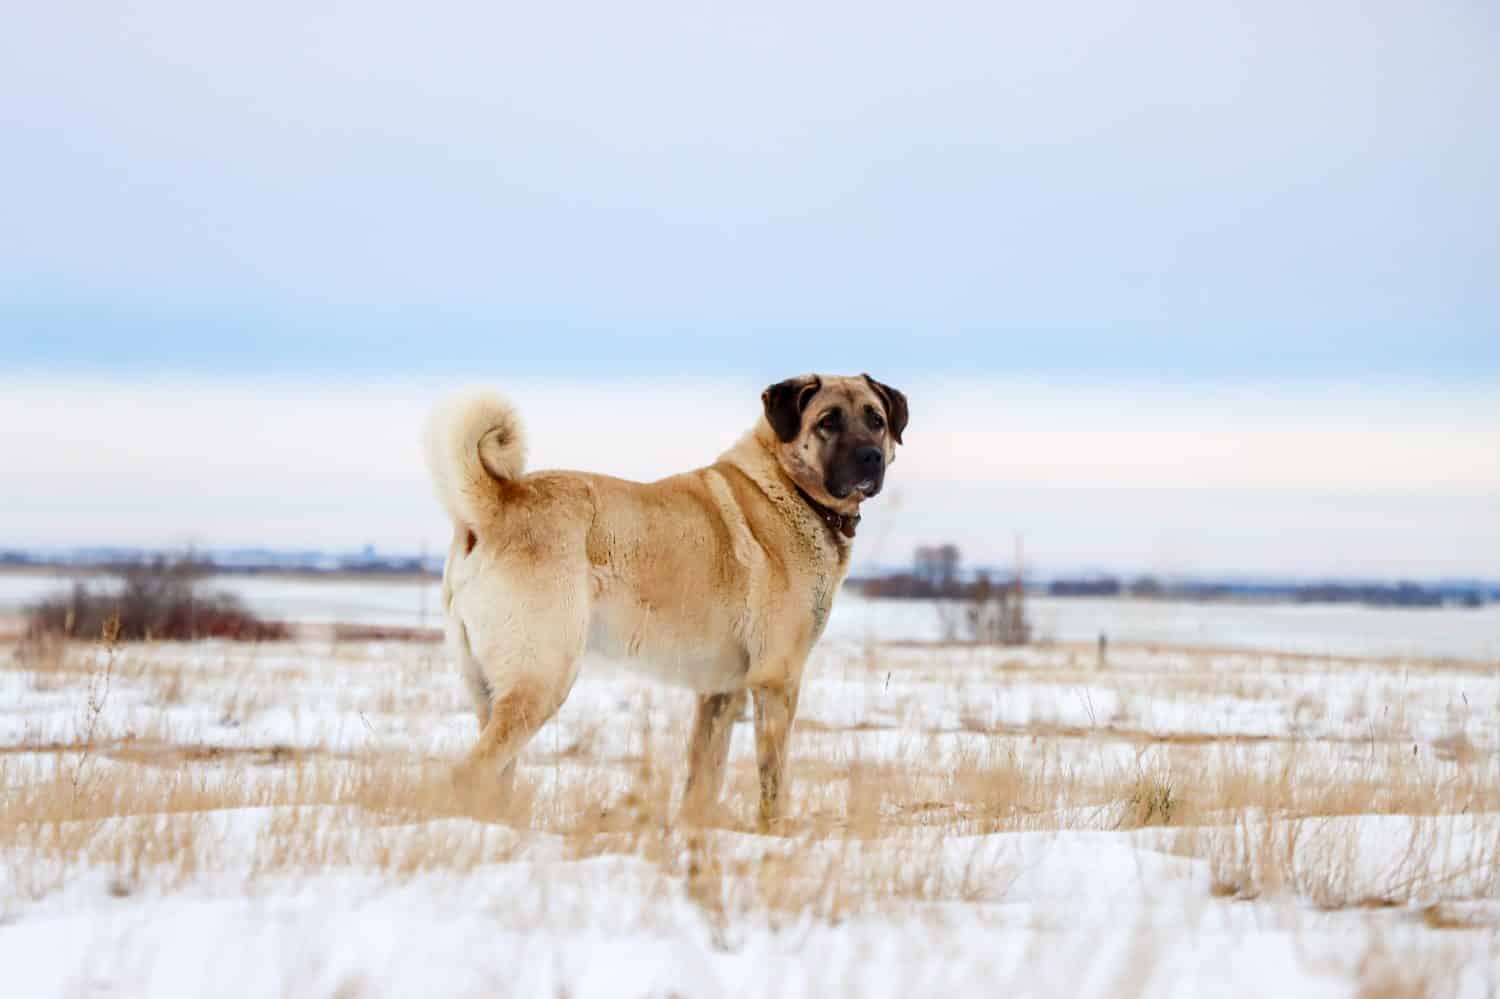 Turkish Kangal dog in winter. Livestock guardian dog.